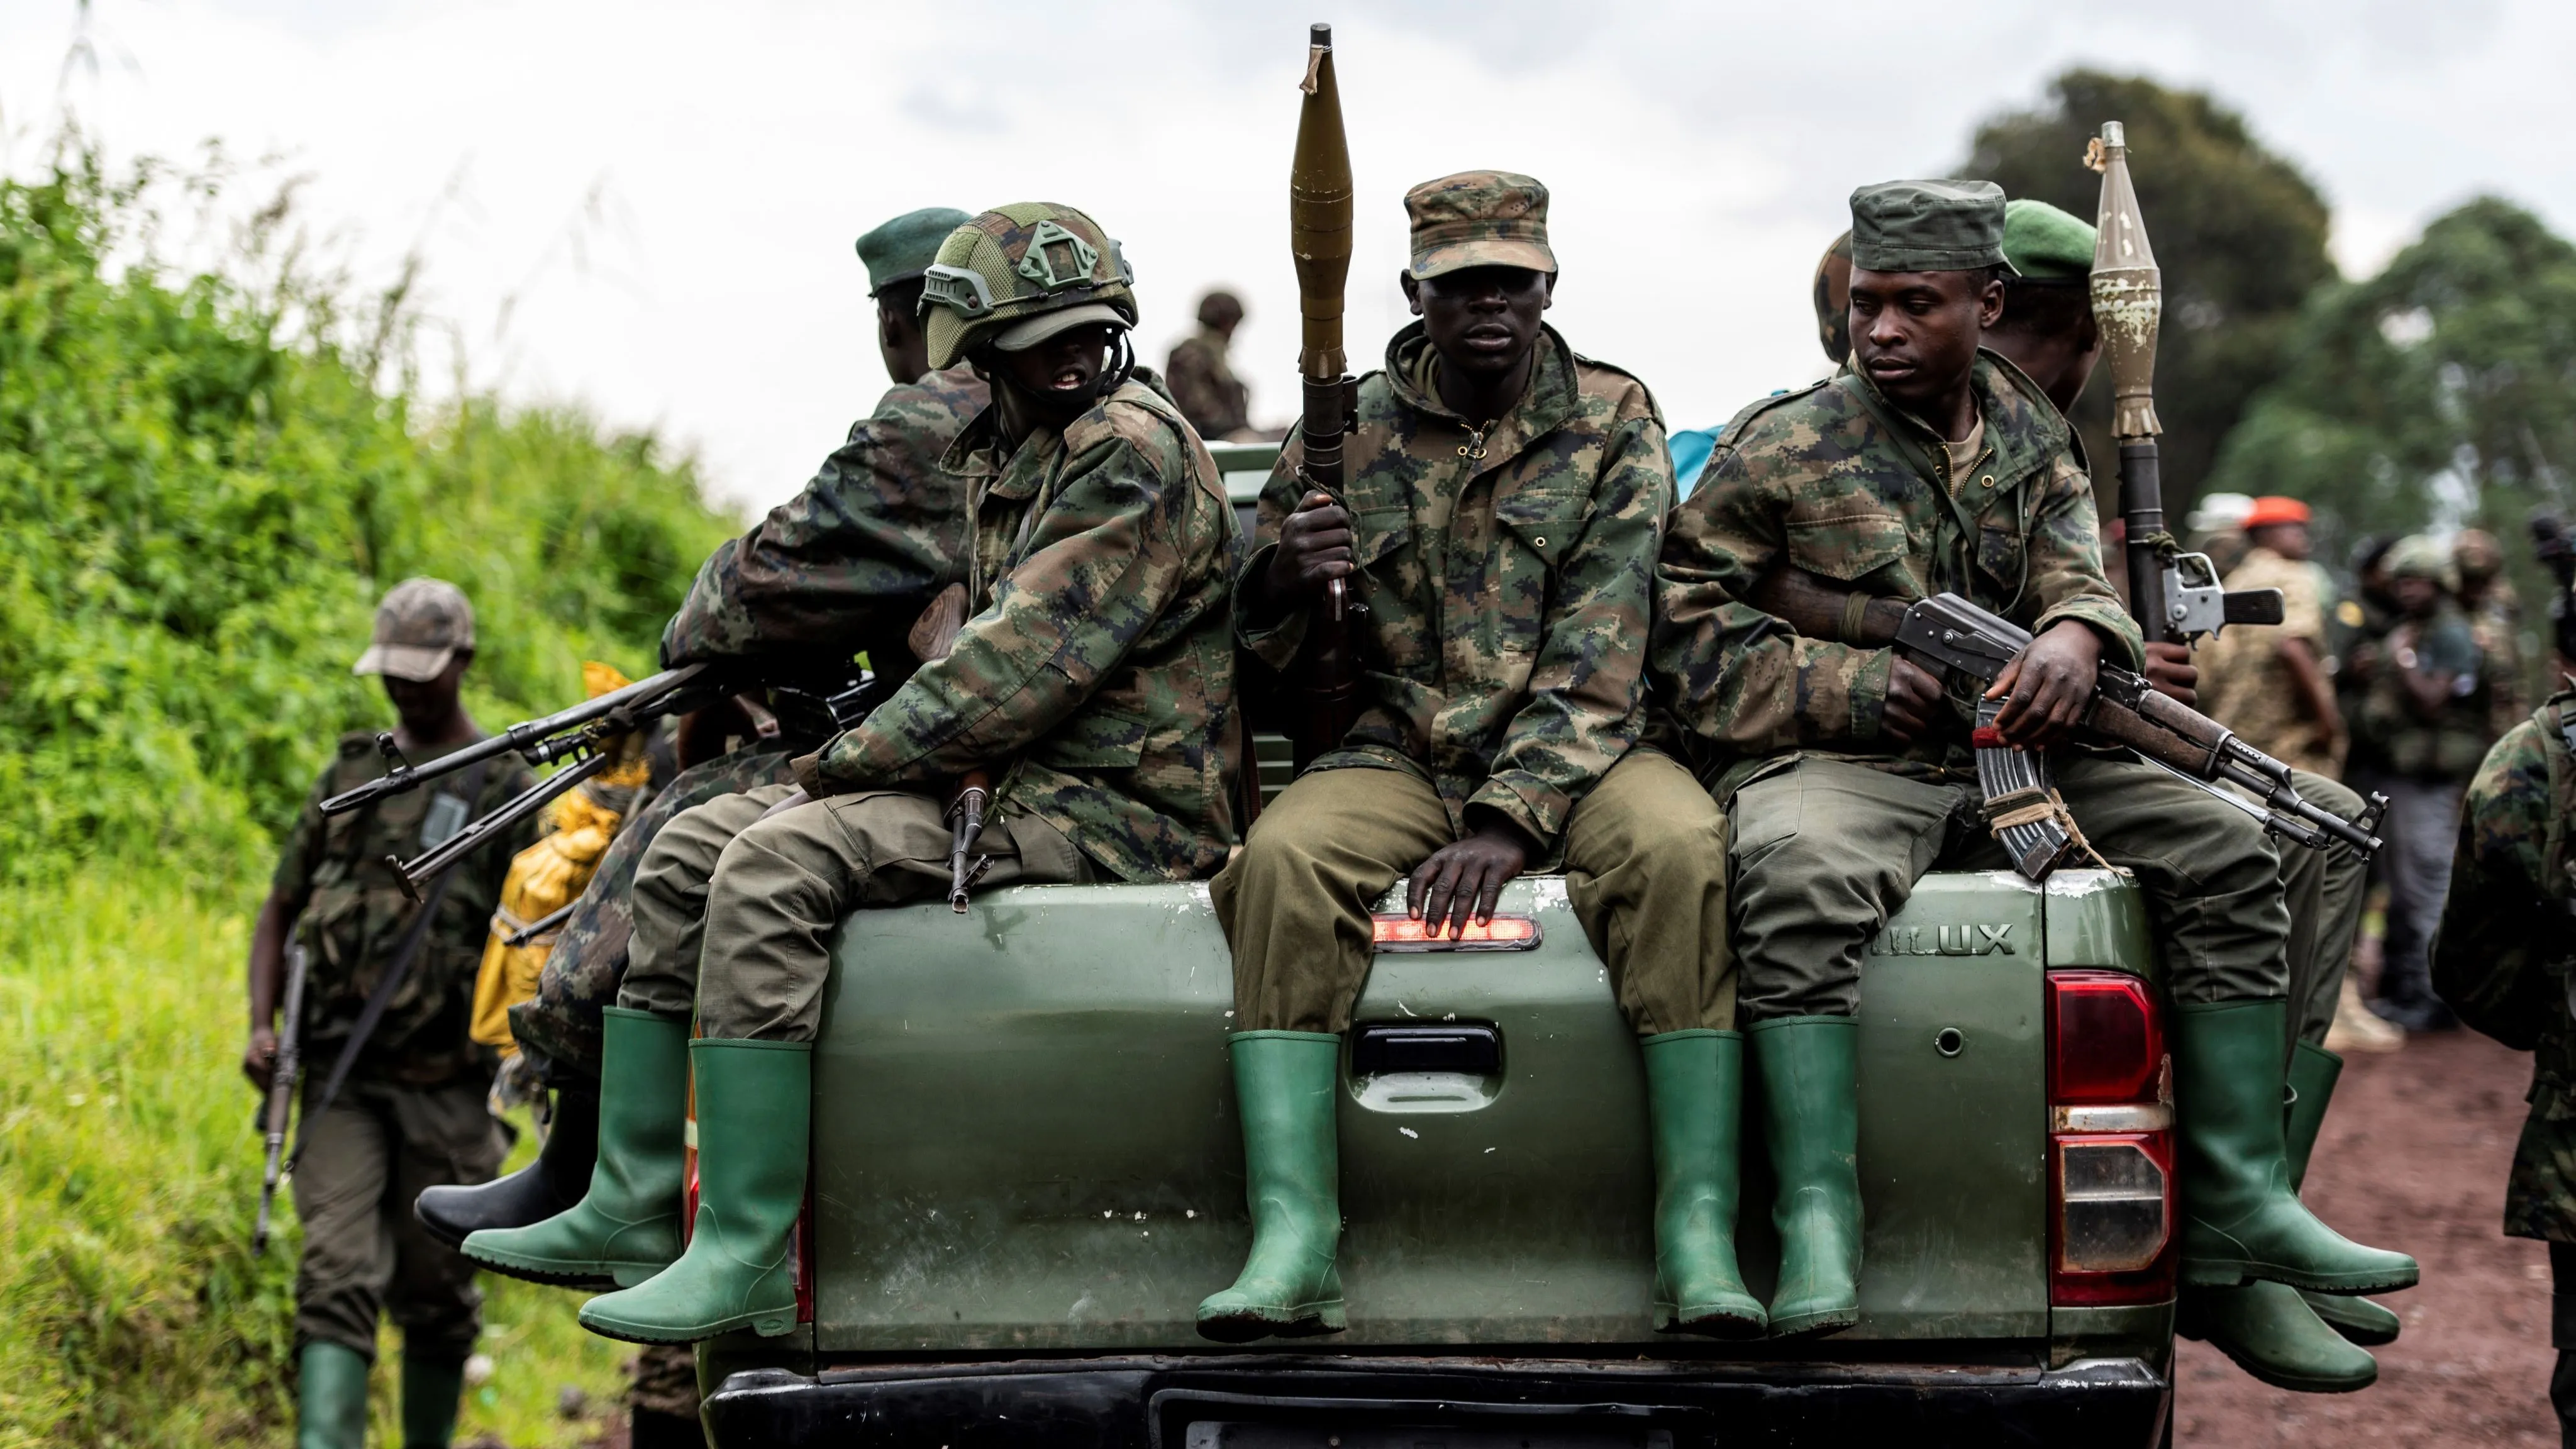 France's Macron urges Rwanda to 'halt support' for M23 rebels